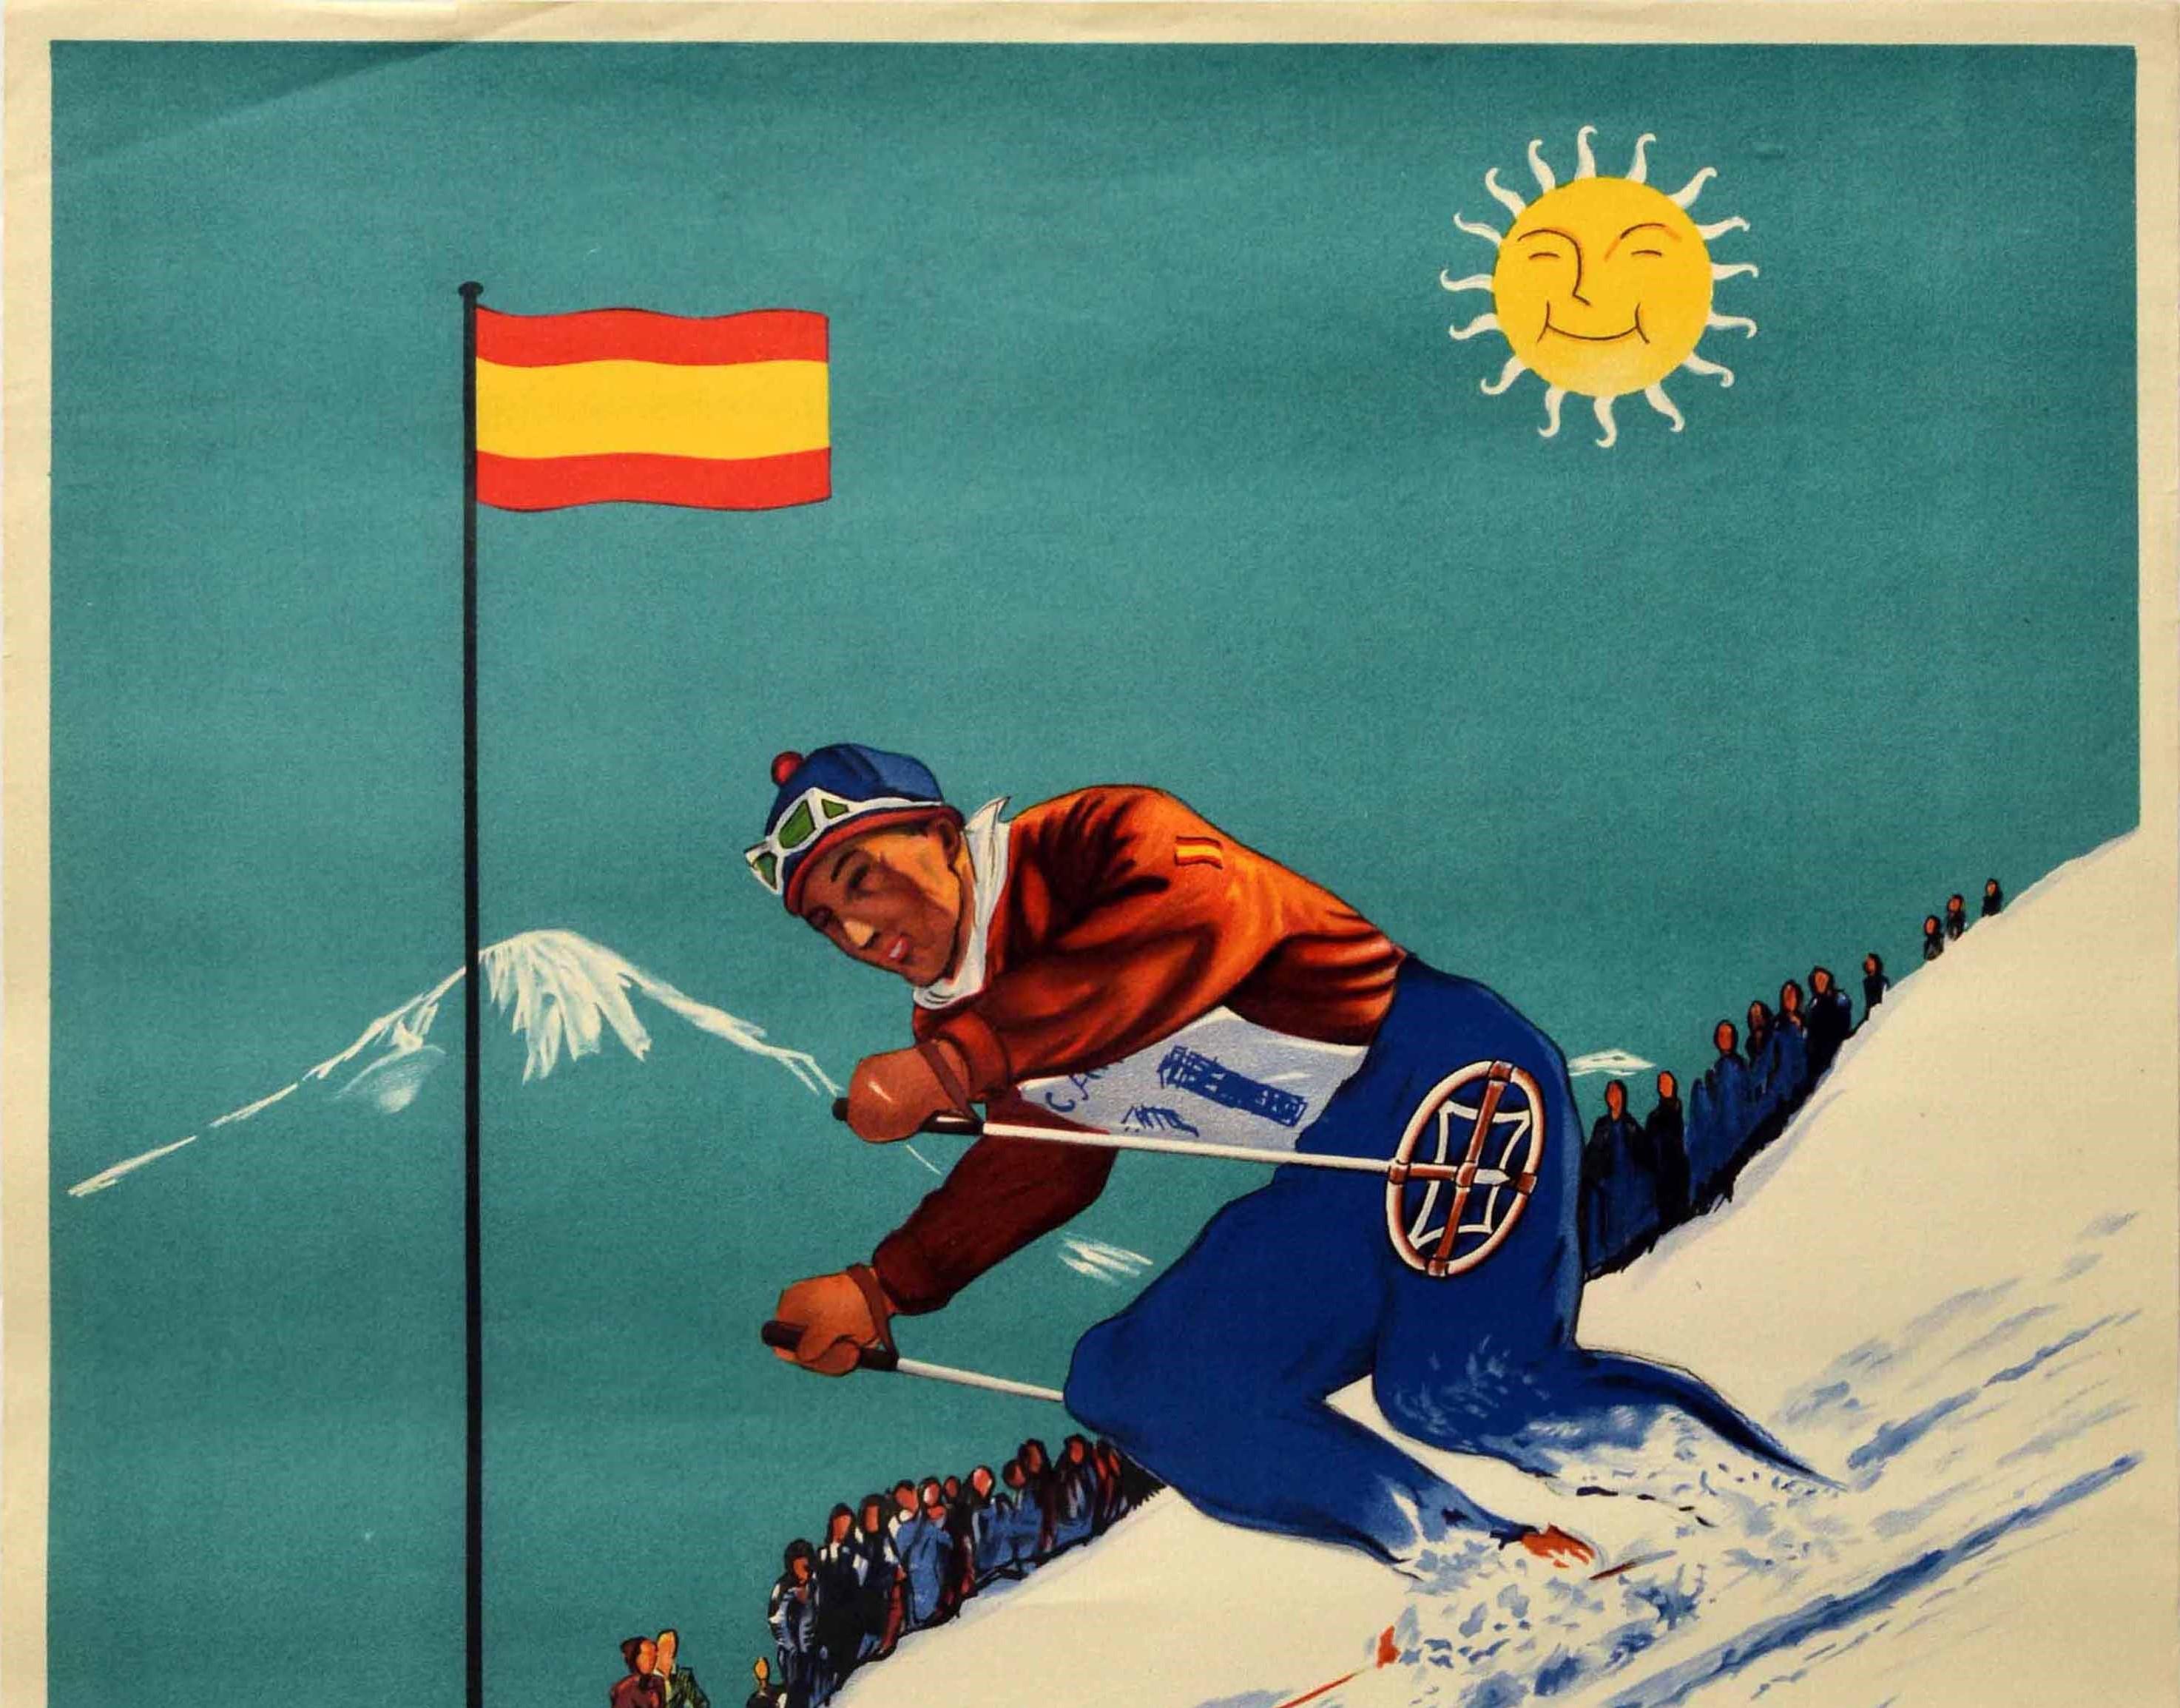 Original Vintage Wintersport alpinen Skigebiet Poster mit einem Skifahrer in rot und blau Skifahren bei der Geschwindigkeit nach unten eine verschneite Piste vorbei an einer roten und gelben Flagge von Spanien fliegen über Zuschauer mit einem Schnee